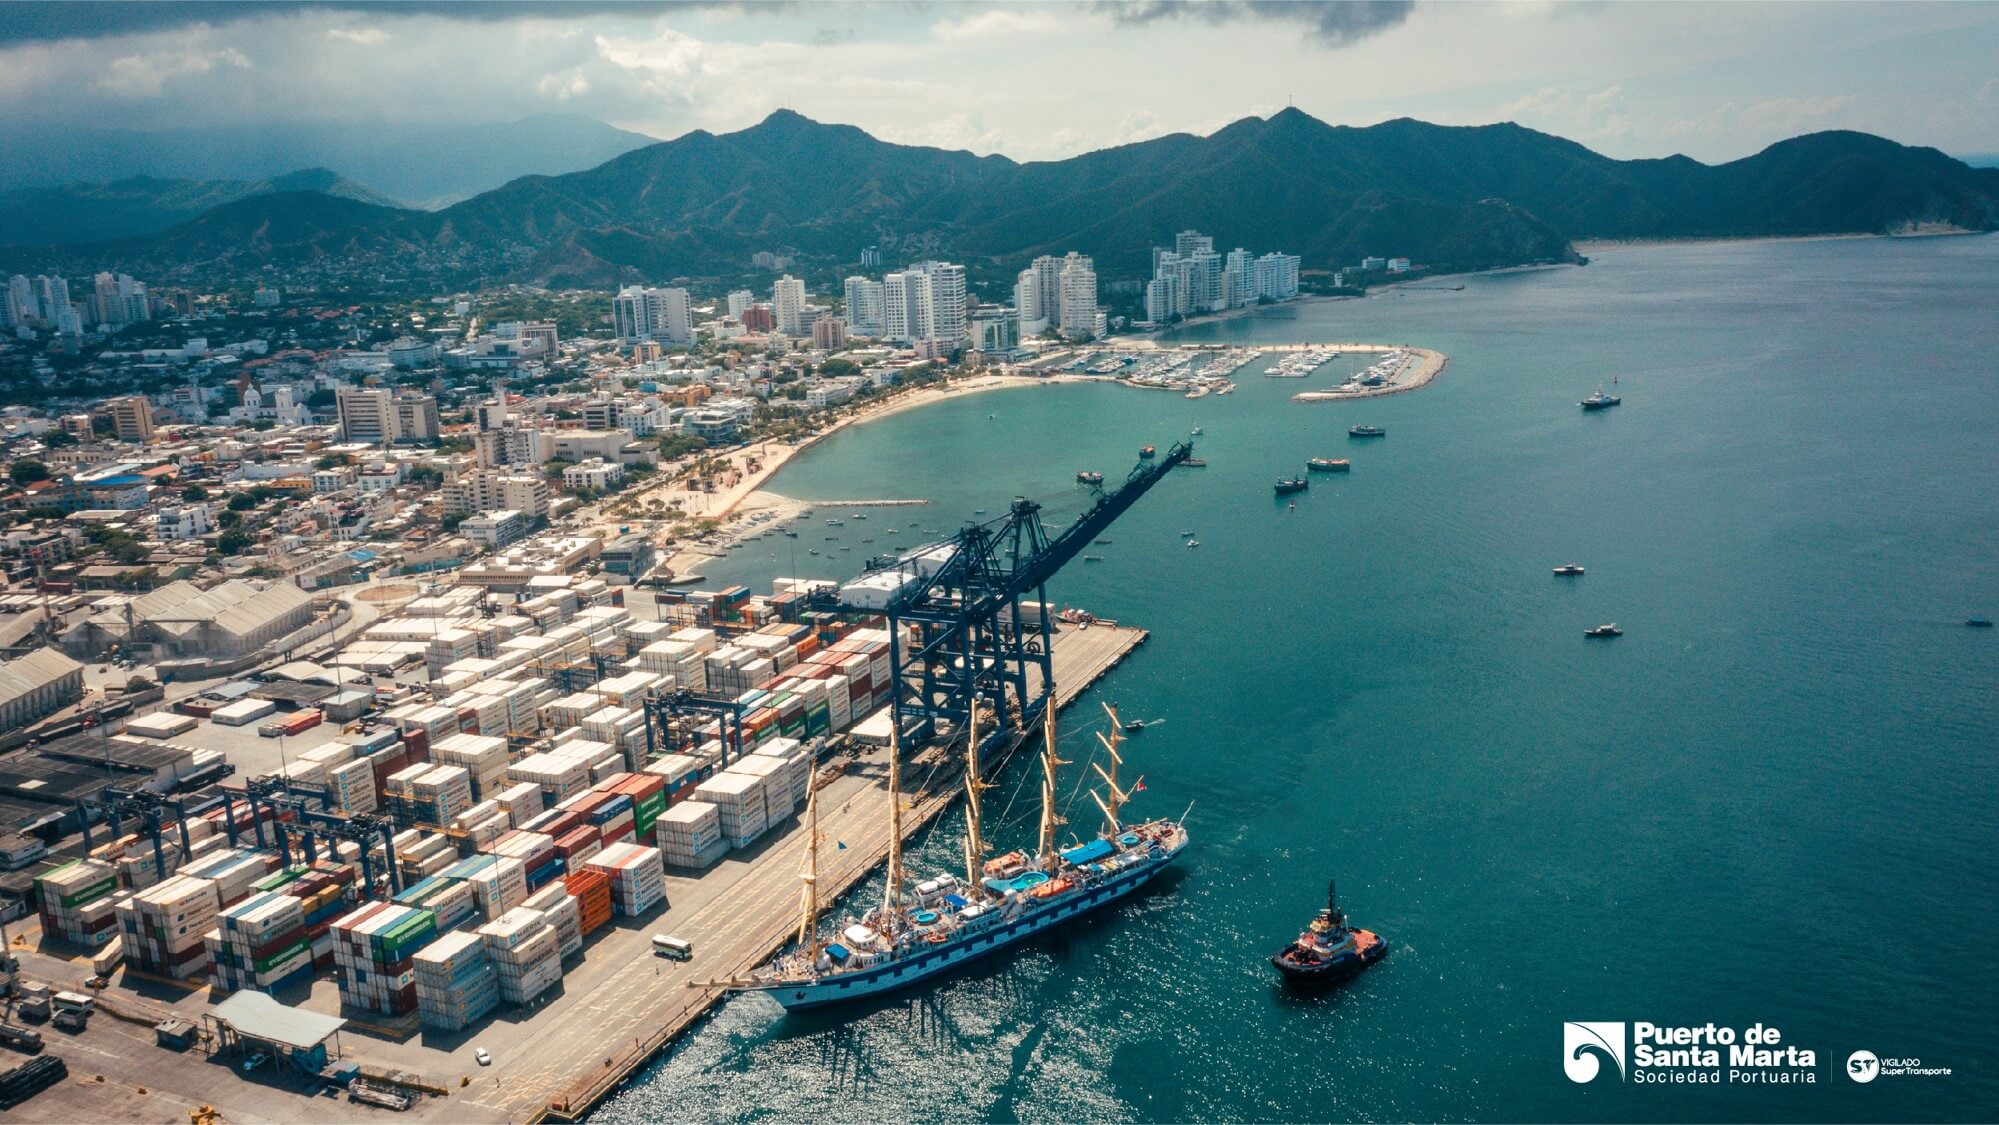 Puerto de Santa Marta, eje dinamizador de la reactivación económica de Santa Marta